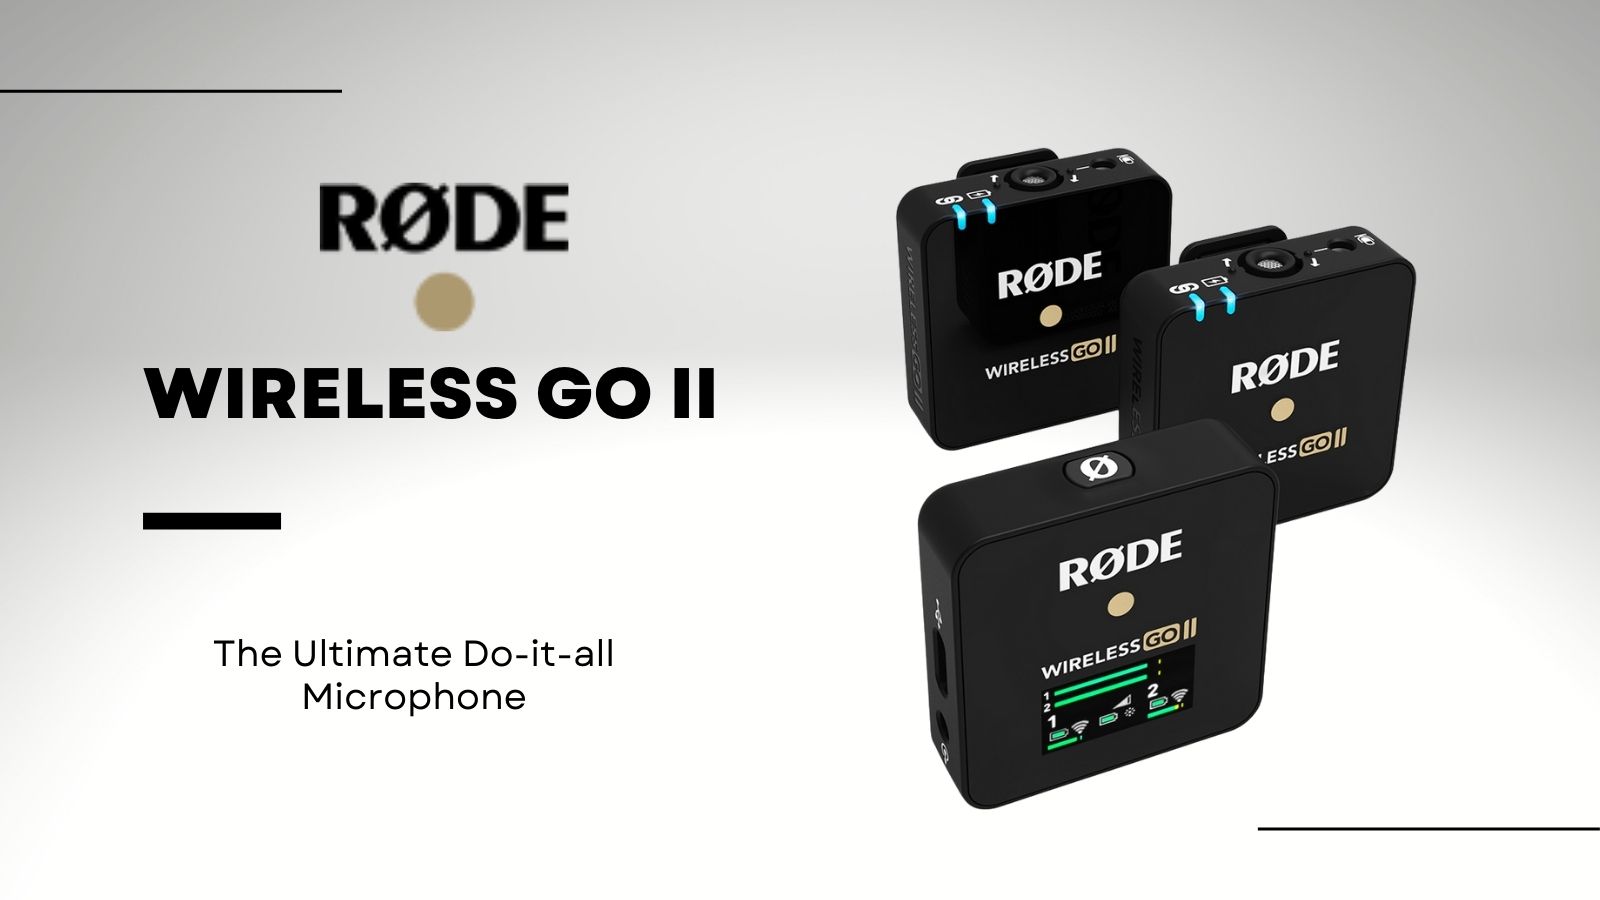 http://marketingelementsblog.com/2022/01/rode-releases-the-wireless-go-ii-microphones/